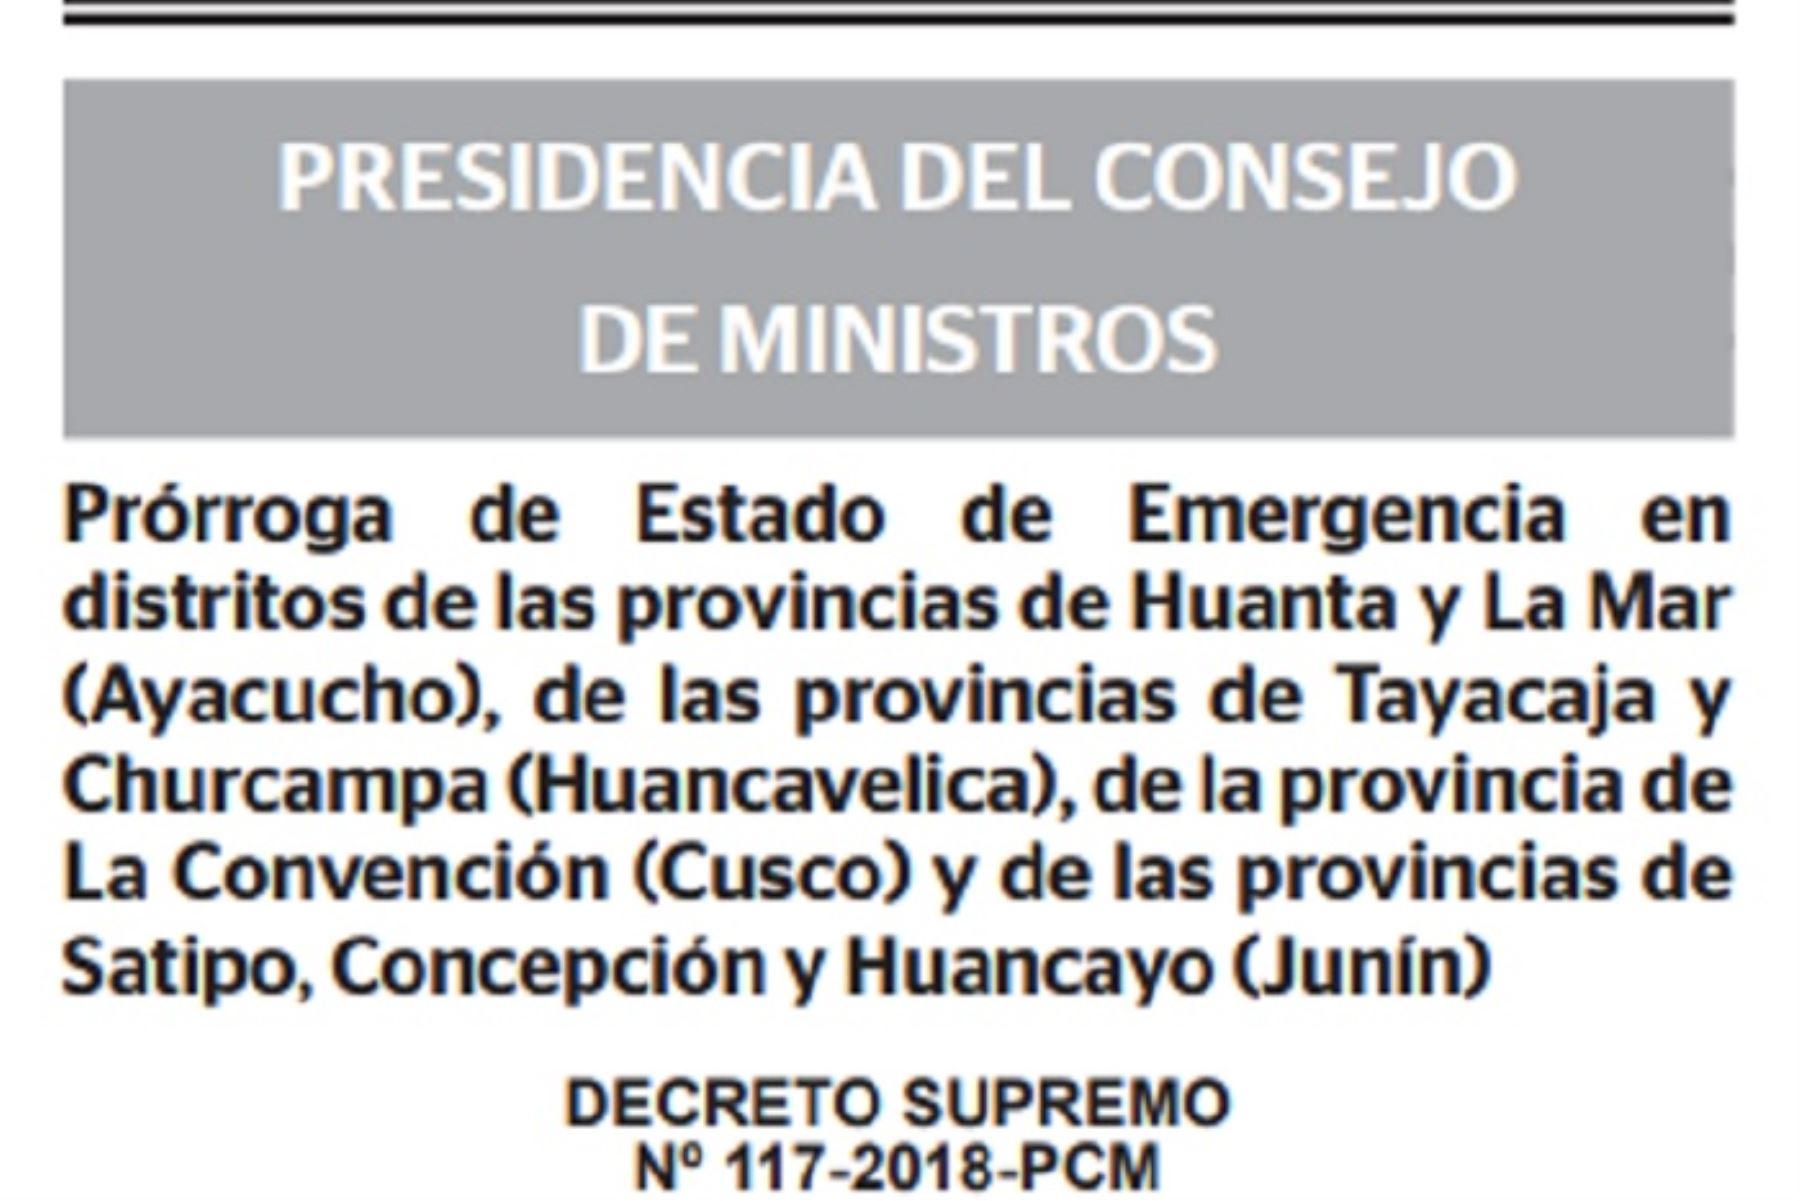 El Ejecutivo prorrogó el estado de emergencia en distritos de las provincias de Huanta y La Mar (Ayacucho), de las provincias de Tayacaja y Churcampa (Huancavelica), de la provincia de La Convención (Cusco) y de las provincias de Satipo, Concepción y Huancayo (Junín), con el objetivo de consolidar la pacificación de la zona y del país